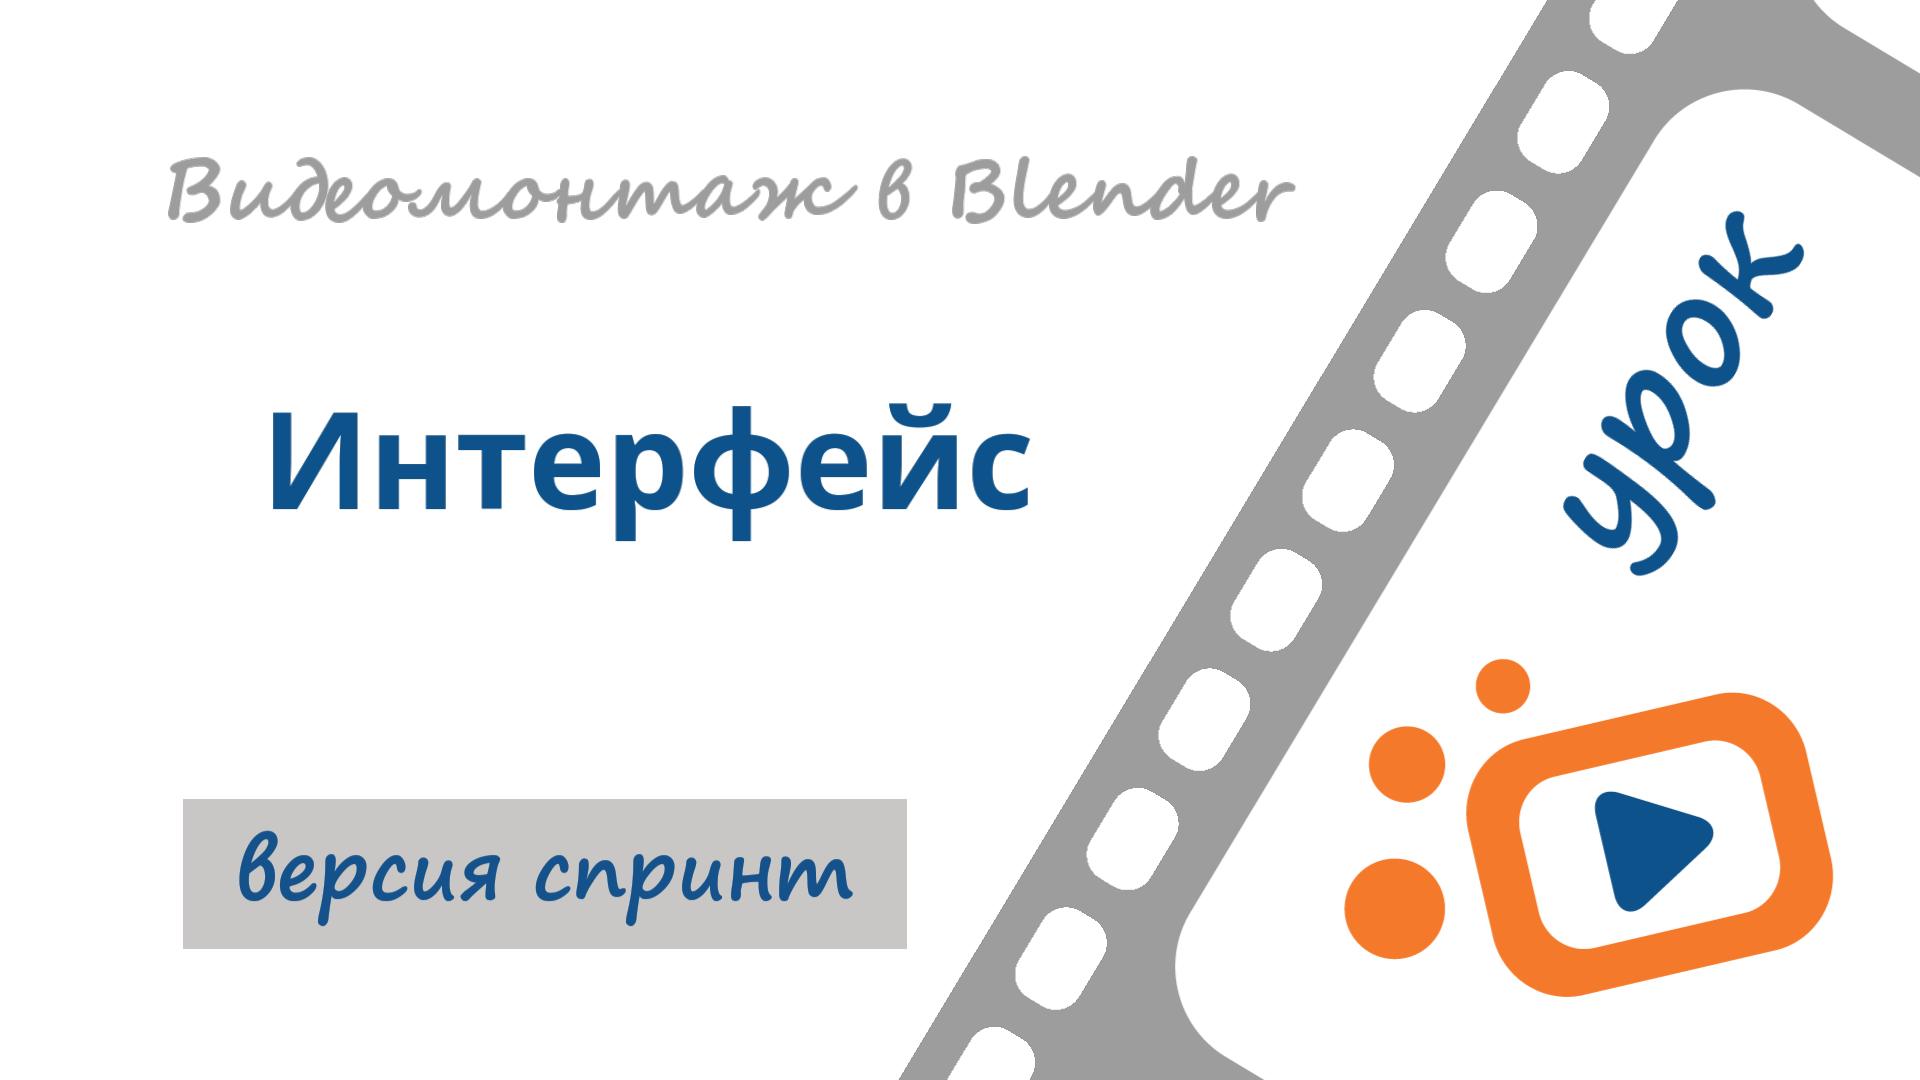 Видеоредактор Blender 3D | Интерфейс Blender